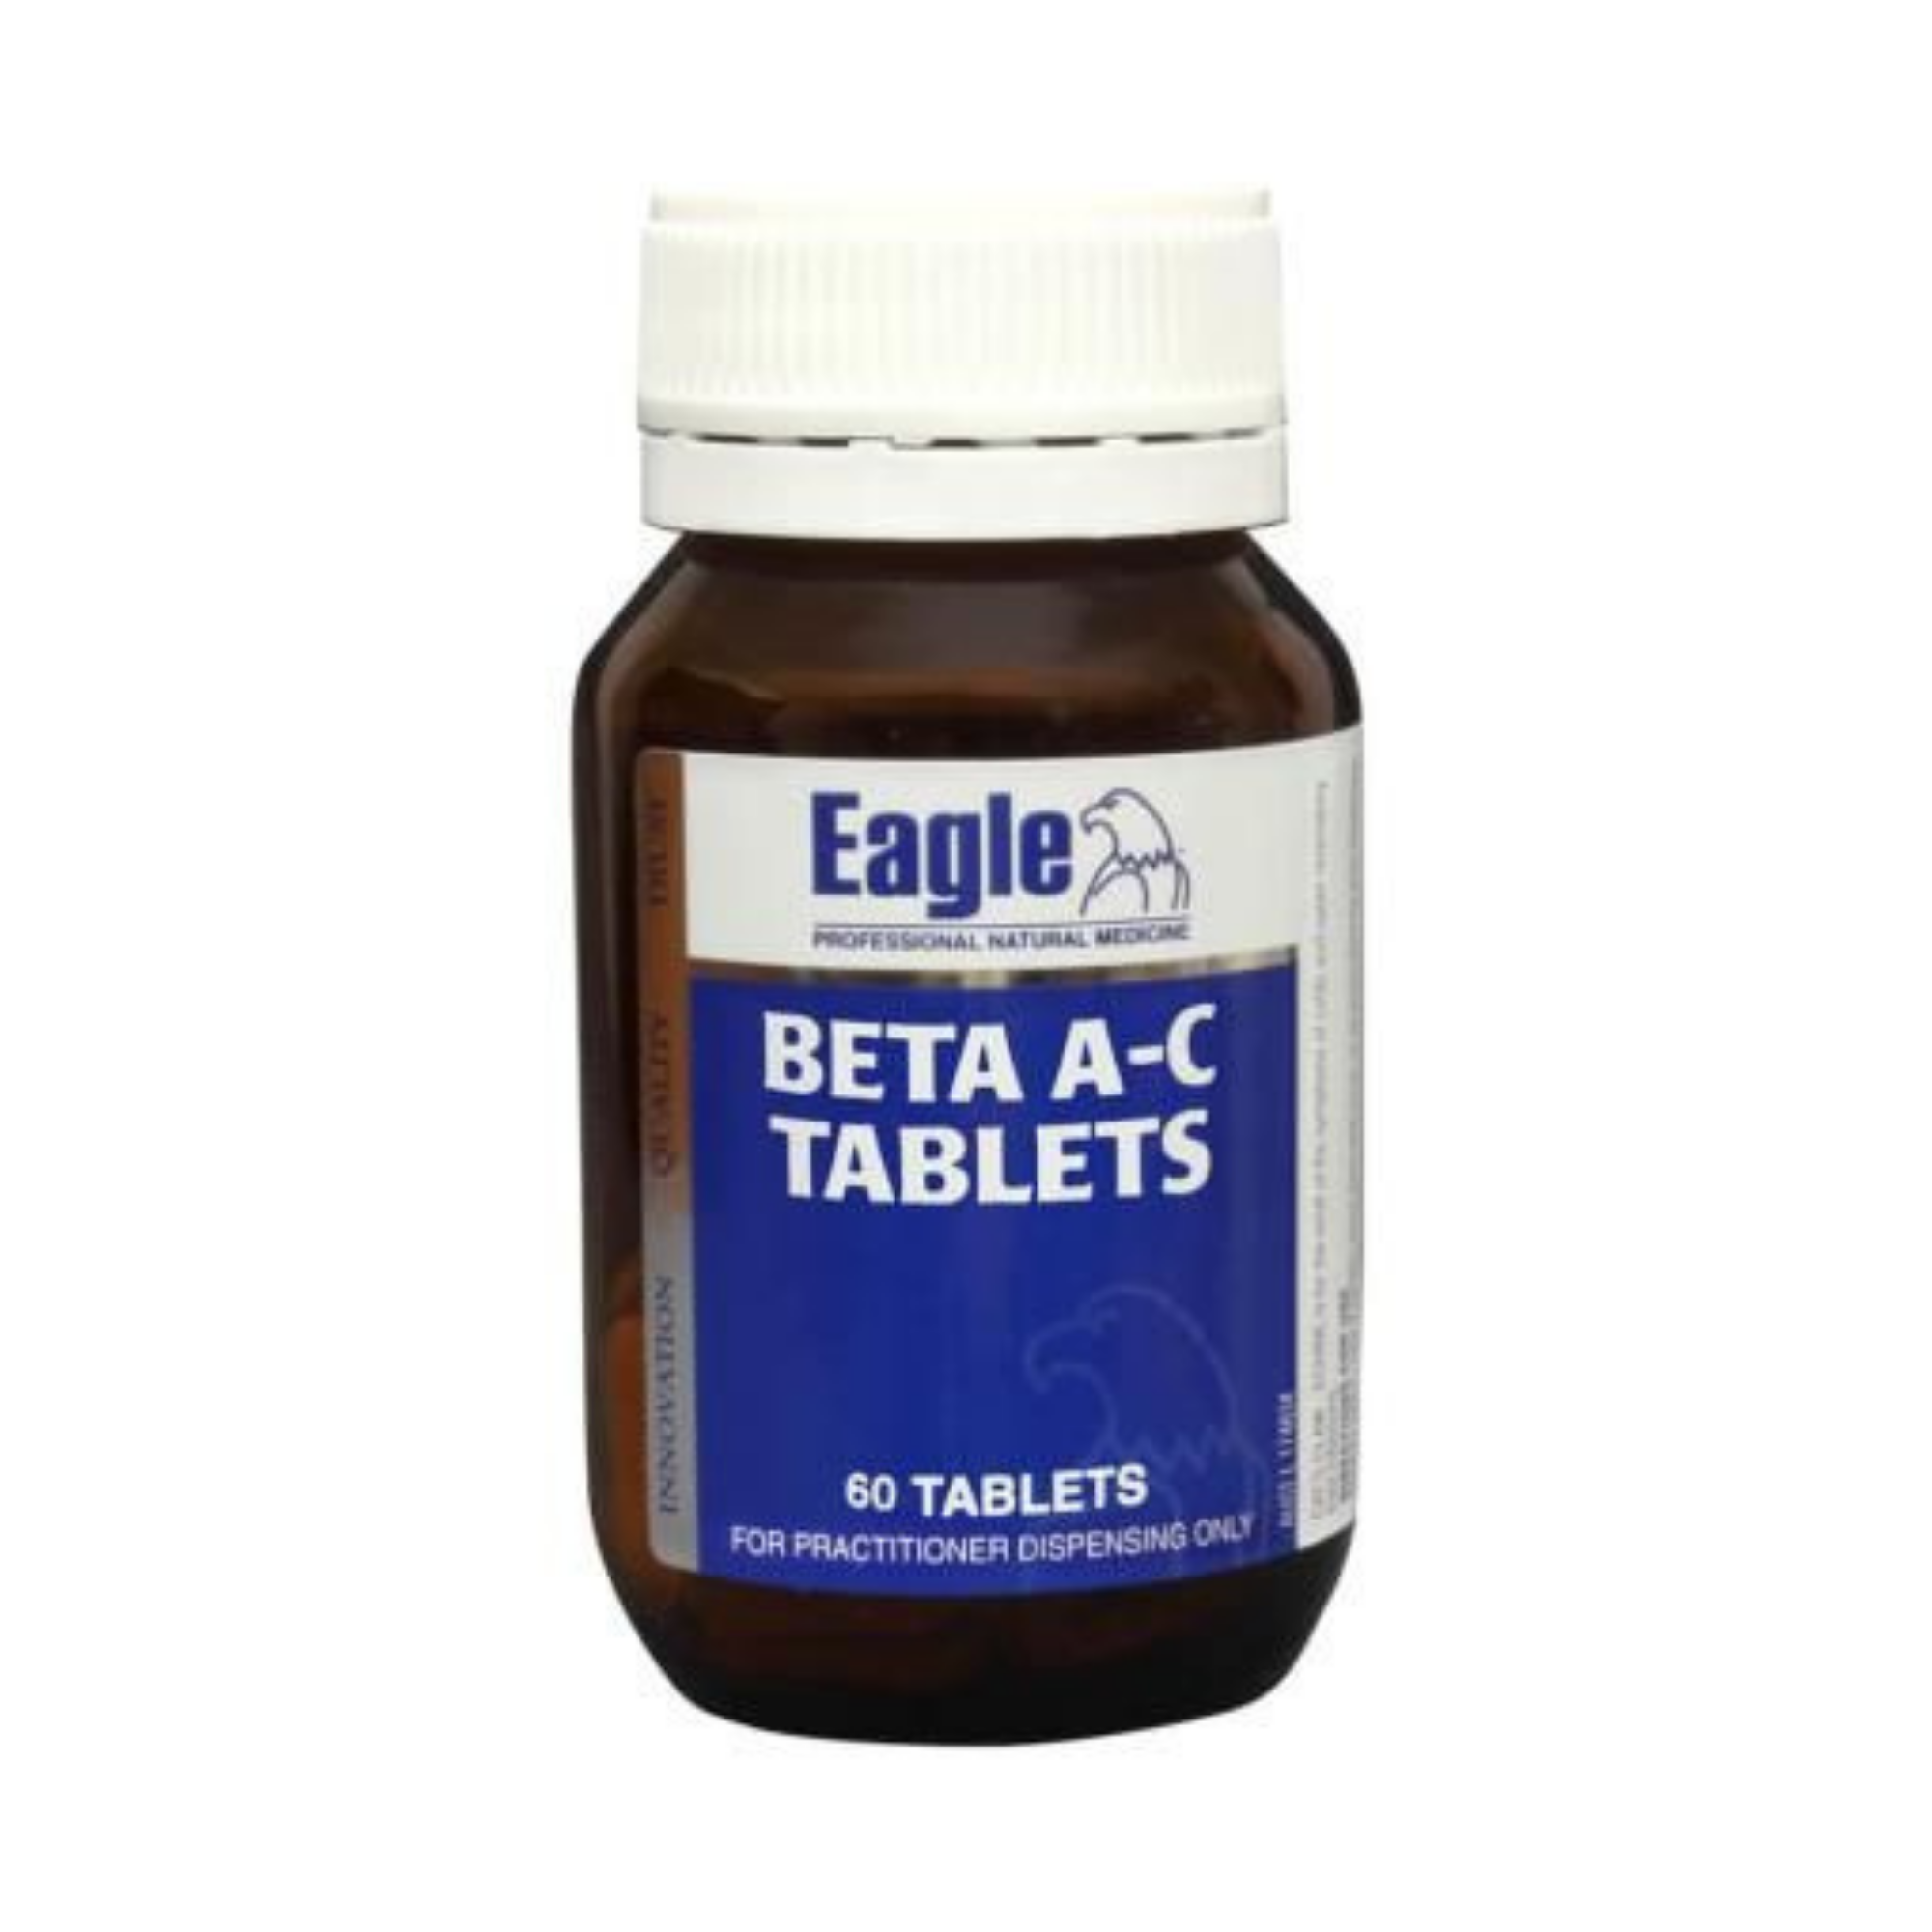 Eagle Eagle Beta A-C Tablets 60 Tablets